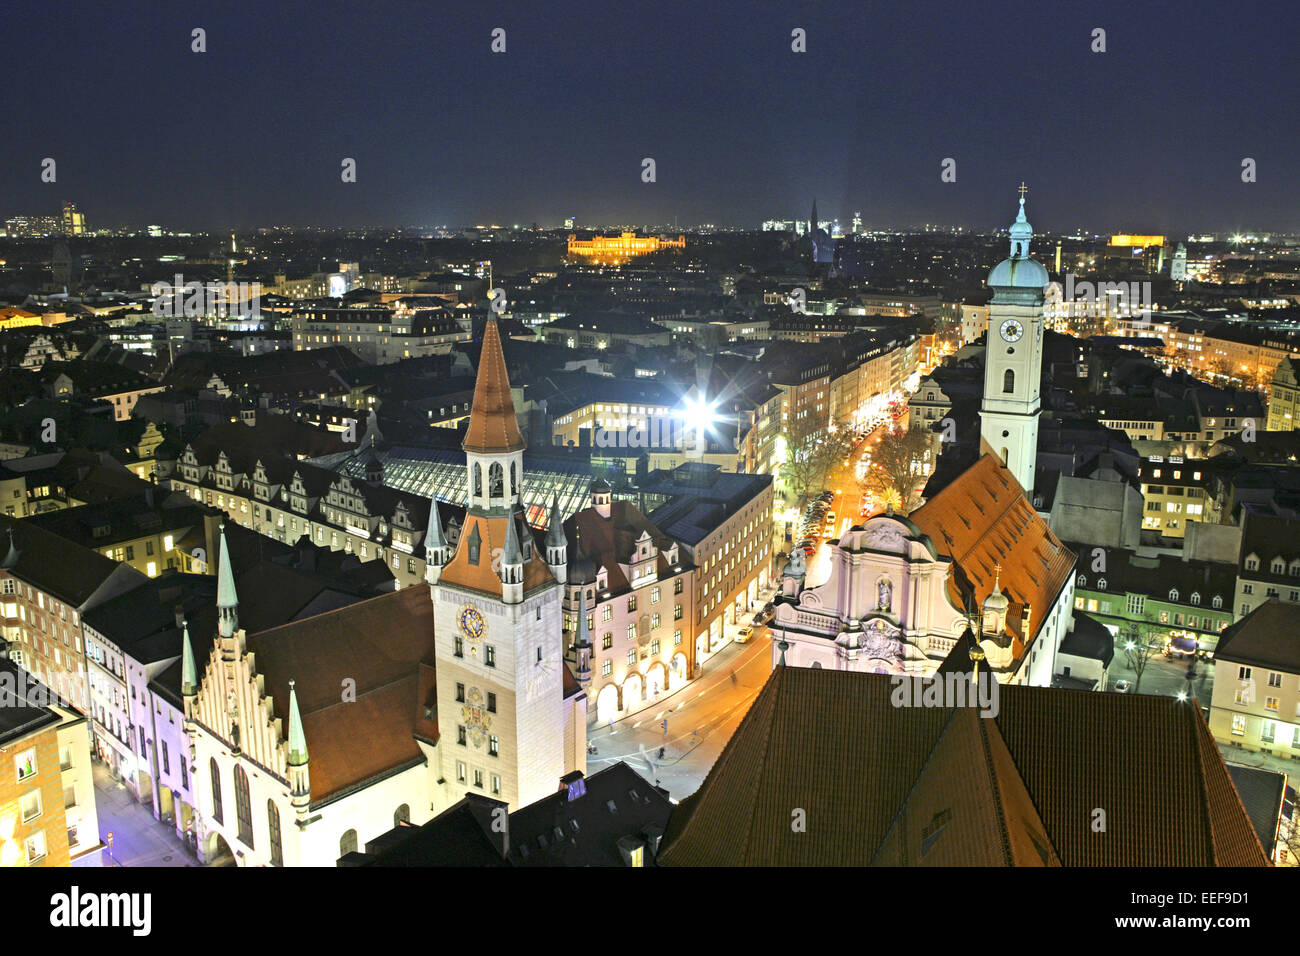 Deutschland München Bayern Abend Marienplatz Innenstadt Stadtansicht Stadt beleuchtet Altes Rathaus Heilig Geist Kirche Tal *** Banque D'Images